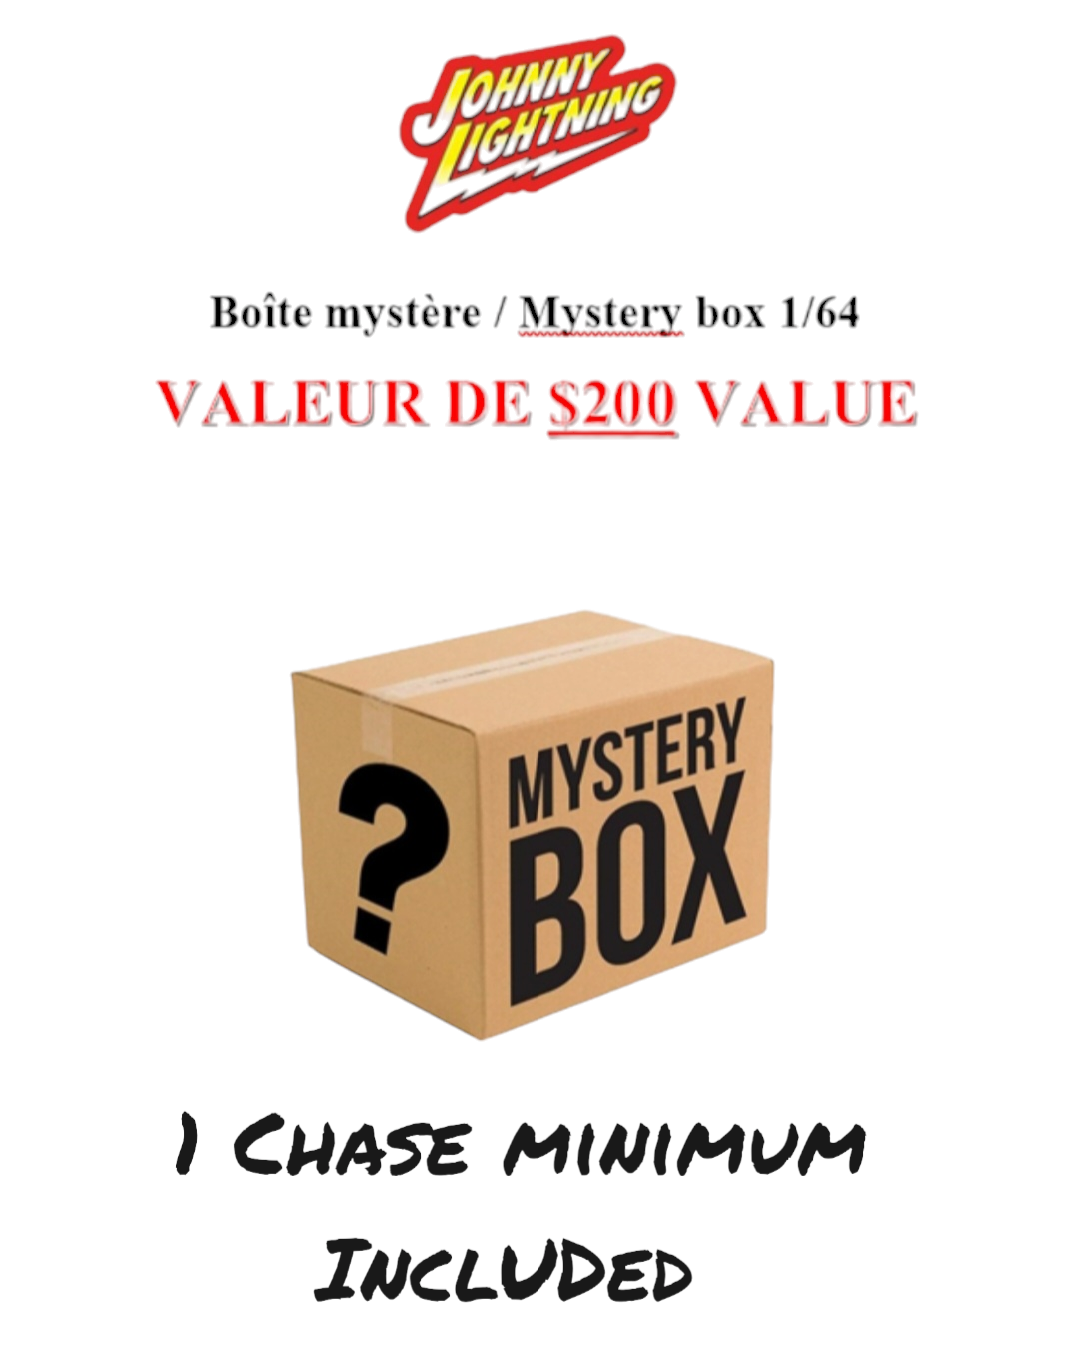 Boîte mystère / Mystery box, Johnny Lightning, 1:64